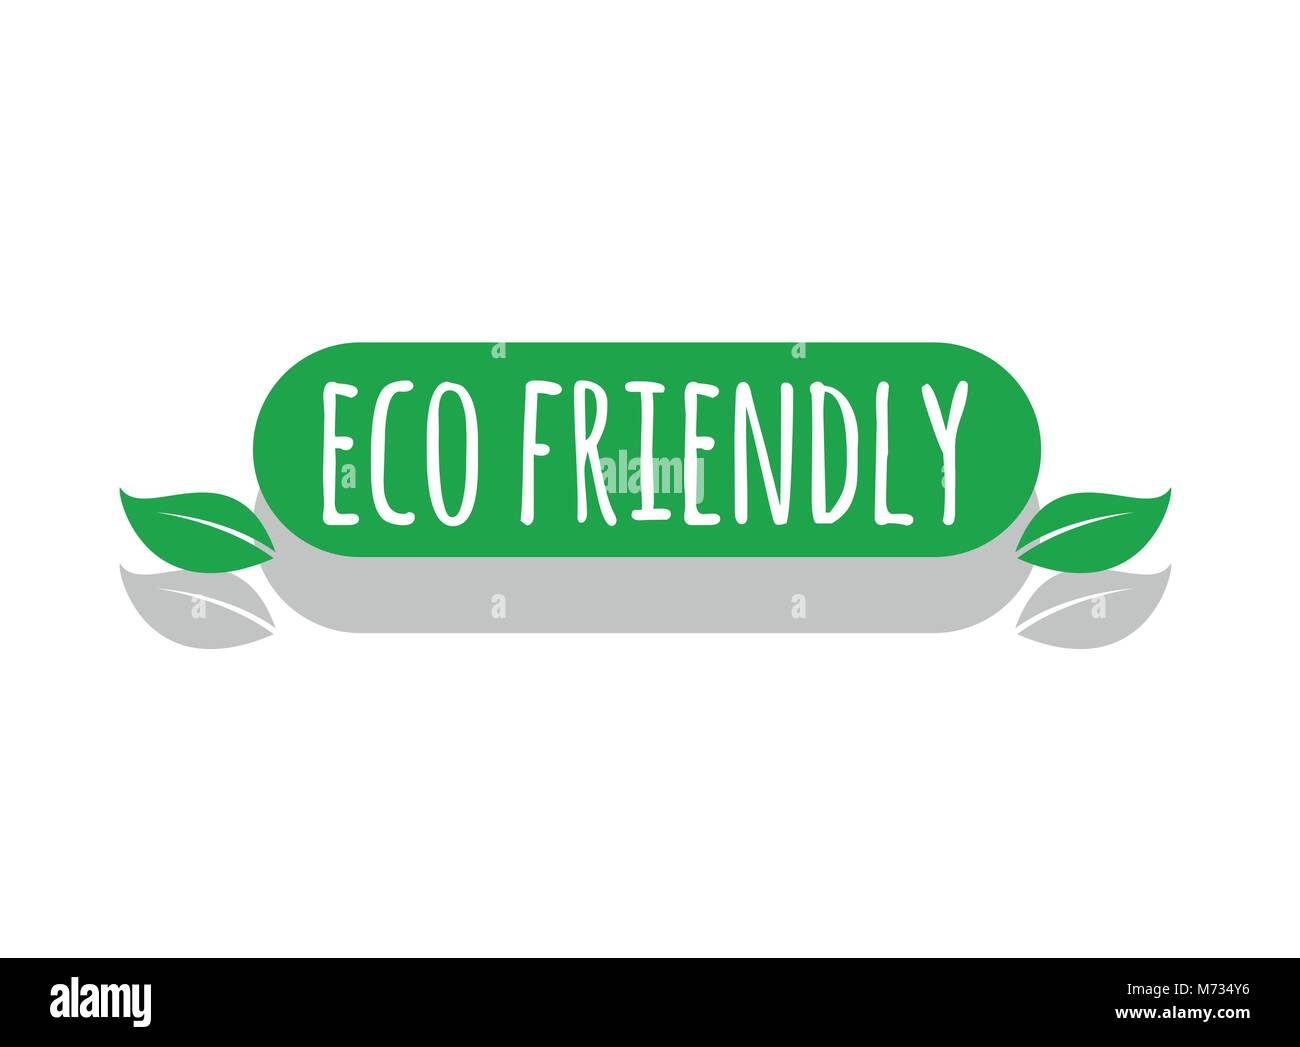 eco friendly vector logo Stock Vector